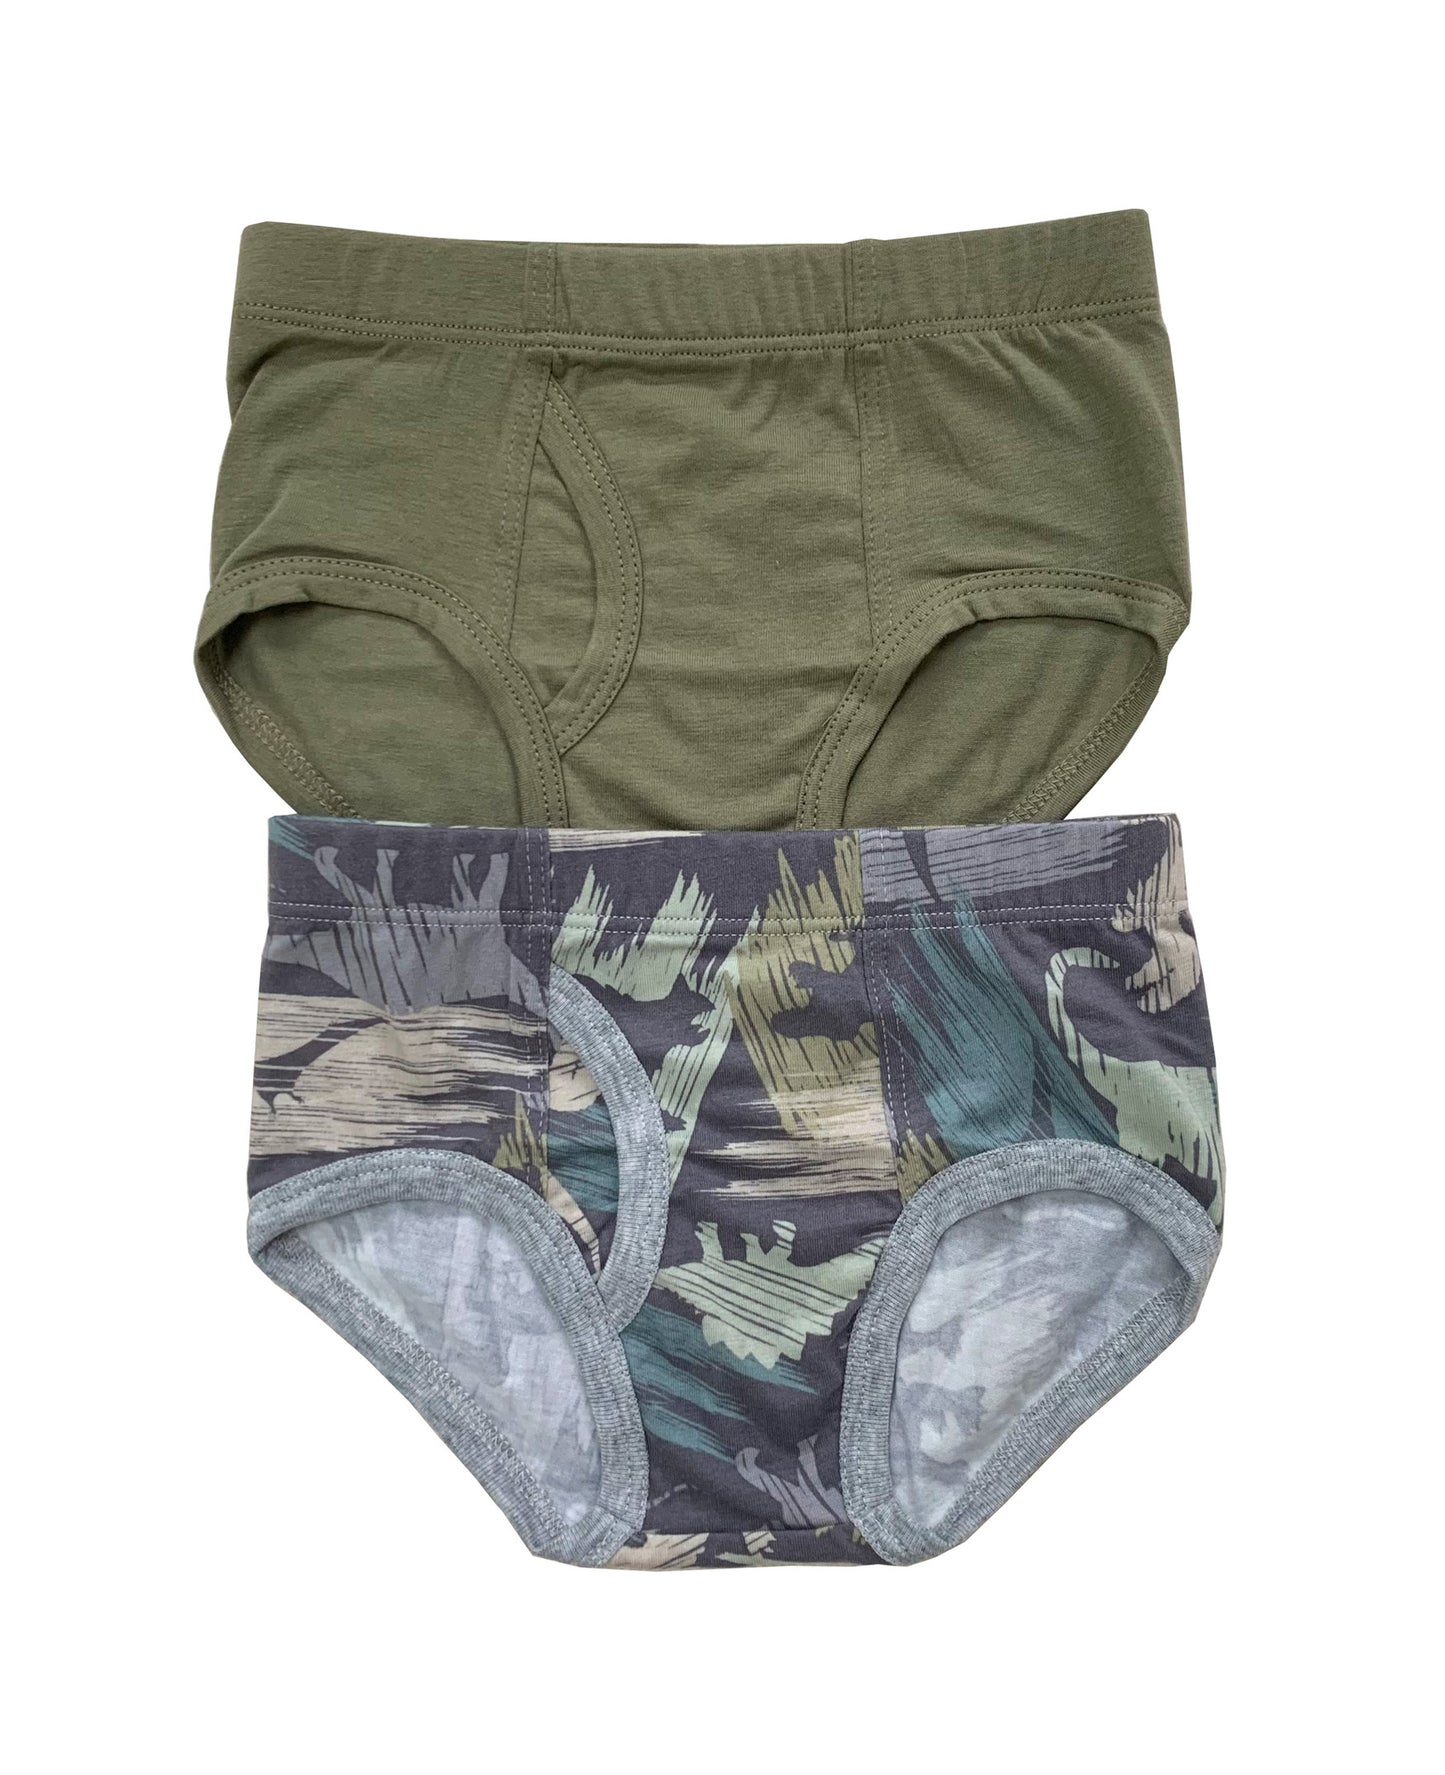 B008 Esme Boys 2pcs Briefs Underwear in Patterns